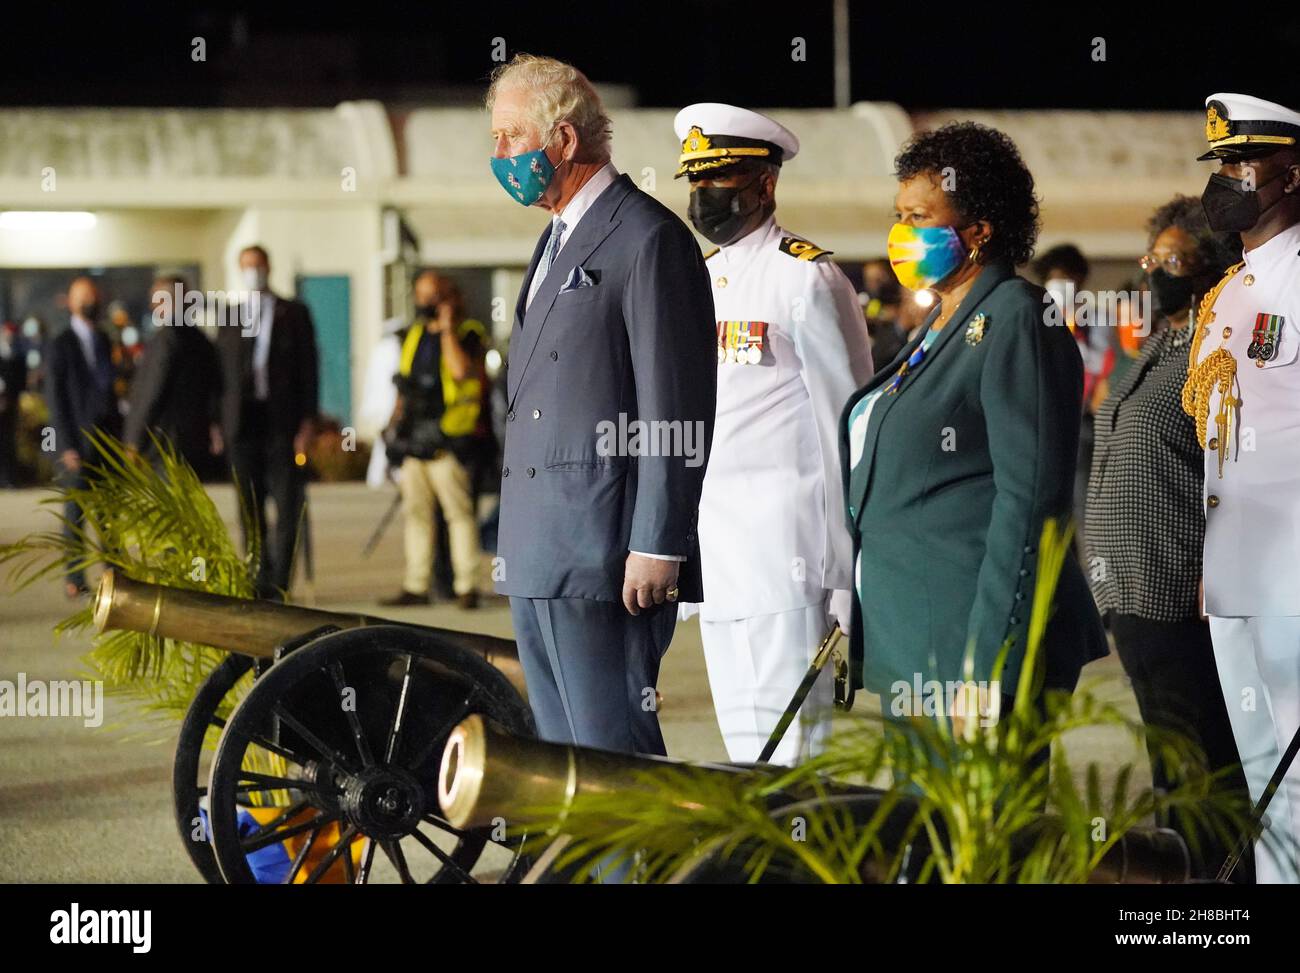 Der Prinz von Wales beobachtet bei seiner Ankunft am internationalen Flughafen Grantley Adams, Bridgetown, Barbados, einen Waffengruß, der neben Sandra Mason, der ehemaligen Generalgouverneurin und designierten Präsidentin von Barbados, steht. Bilddatum: Sonntag, 28. November 2021. Stockfoto